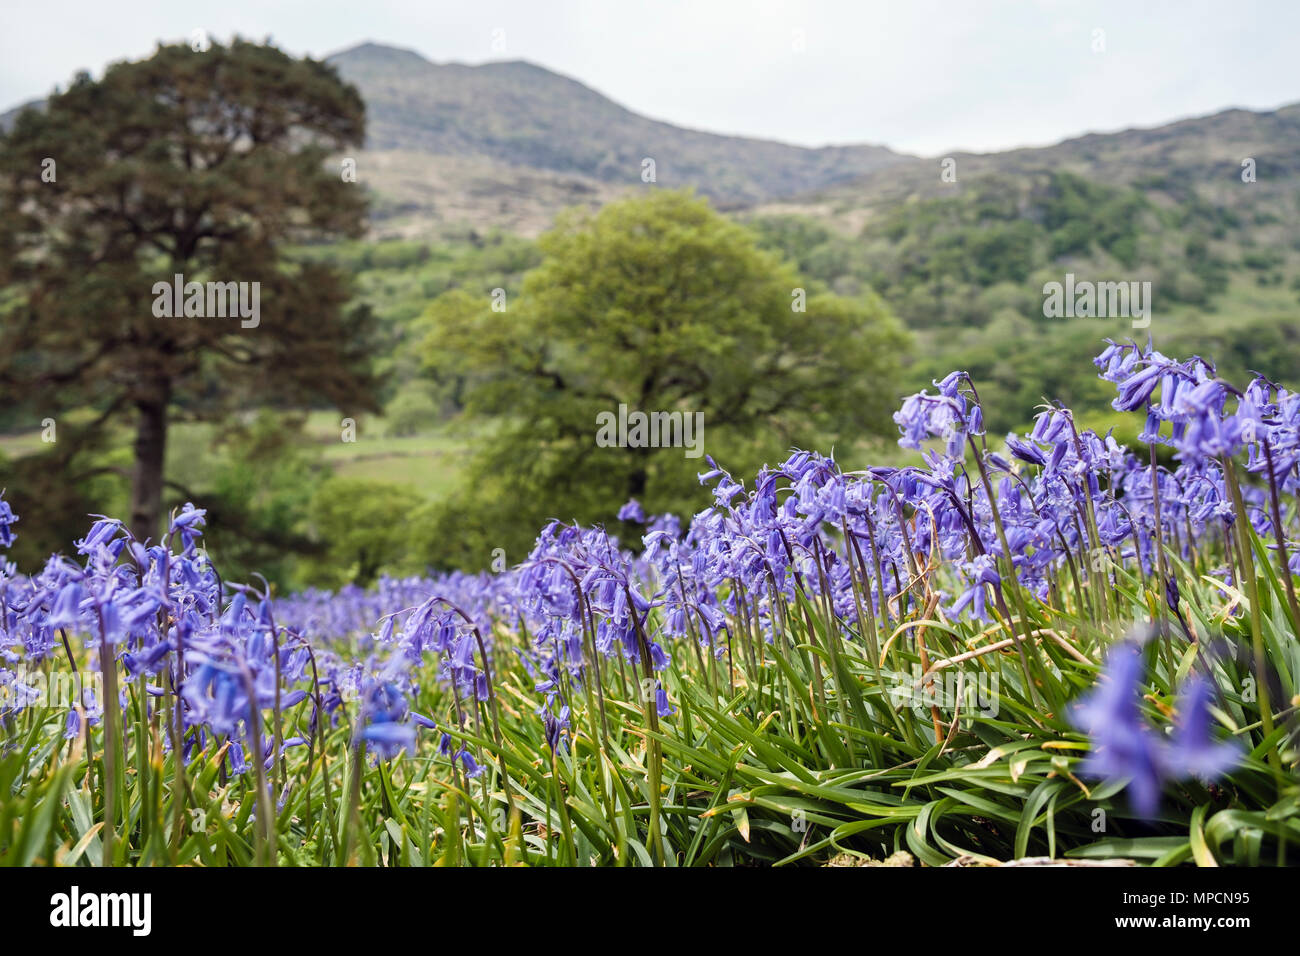 Impresionante vista de campanillas creciendo sobre una ladera abierta en el Parque Nacional de Snowdonia, a finales de primavera a principios de verano. Nant Gwynant Gwynedd Wales Reino Unido Gran Bretaña Foto de stock